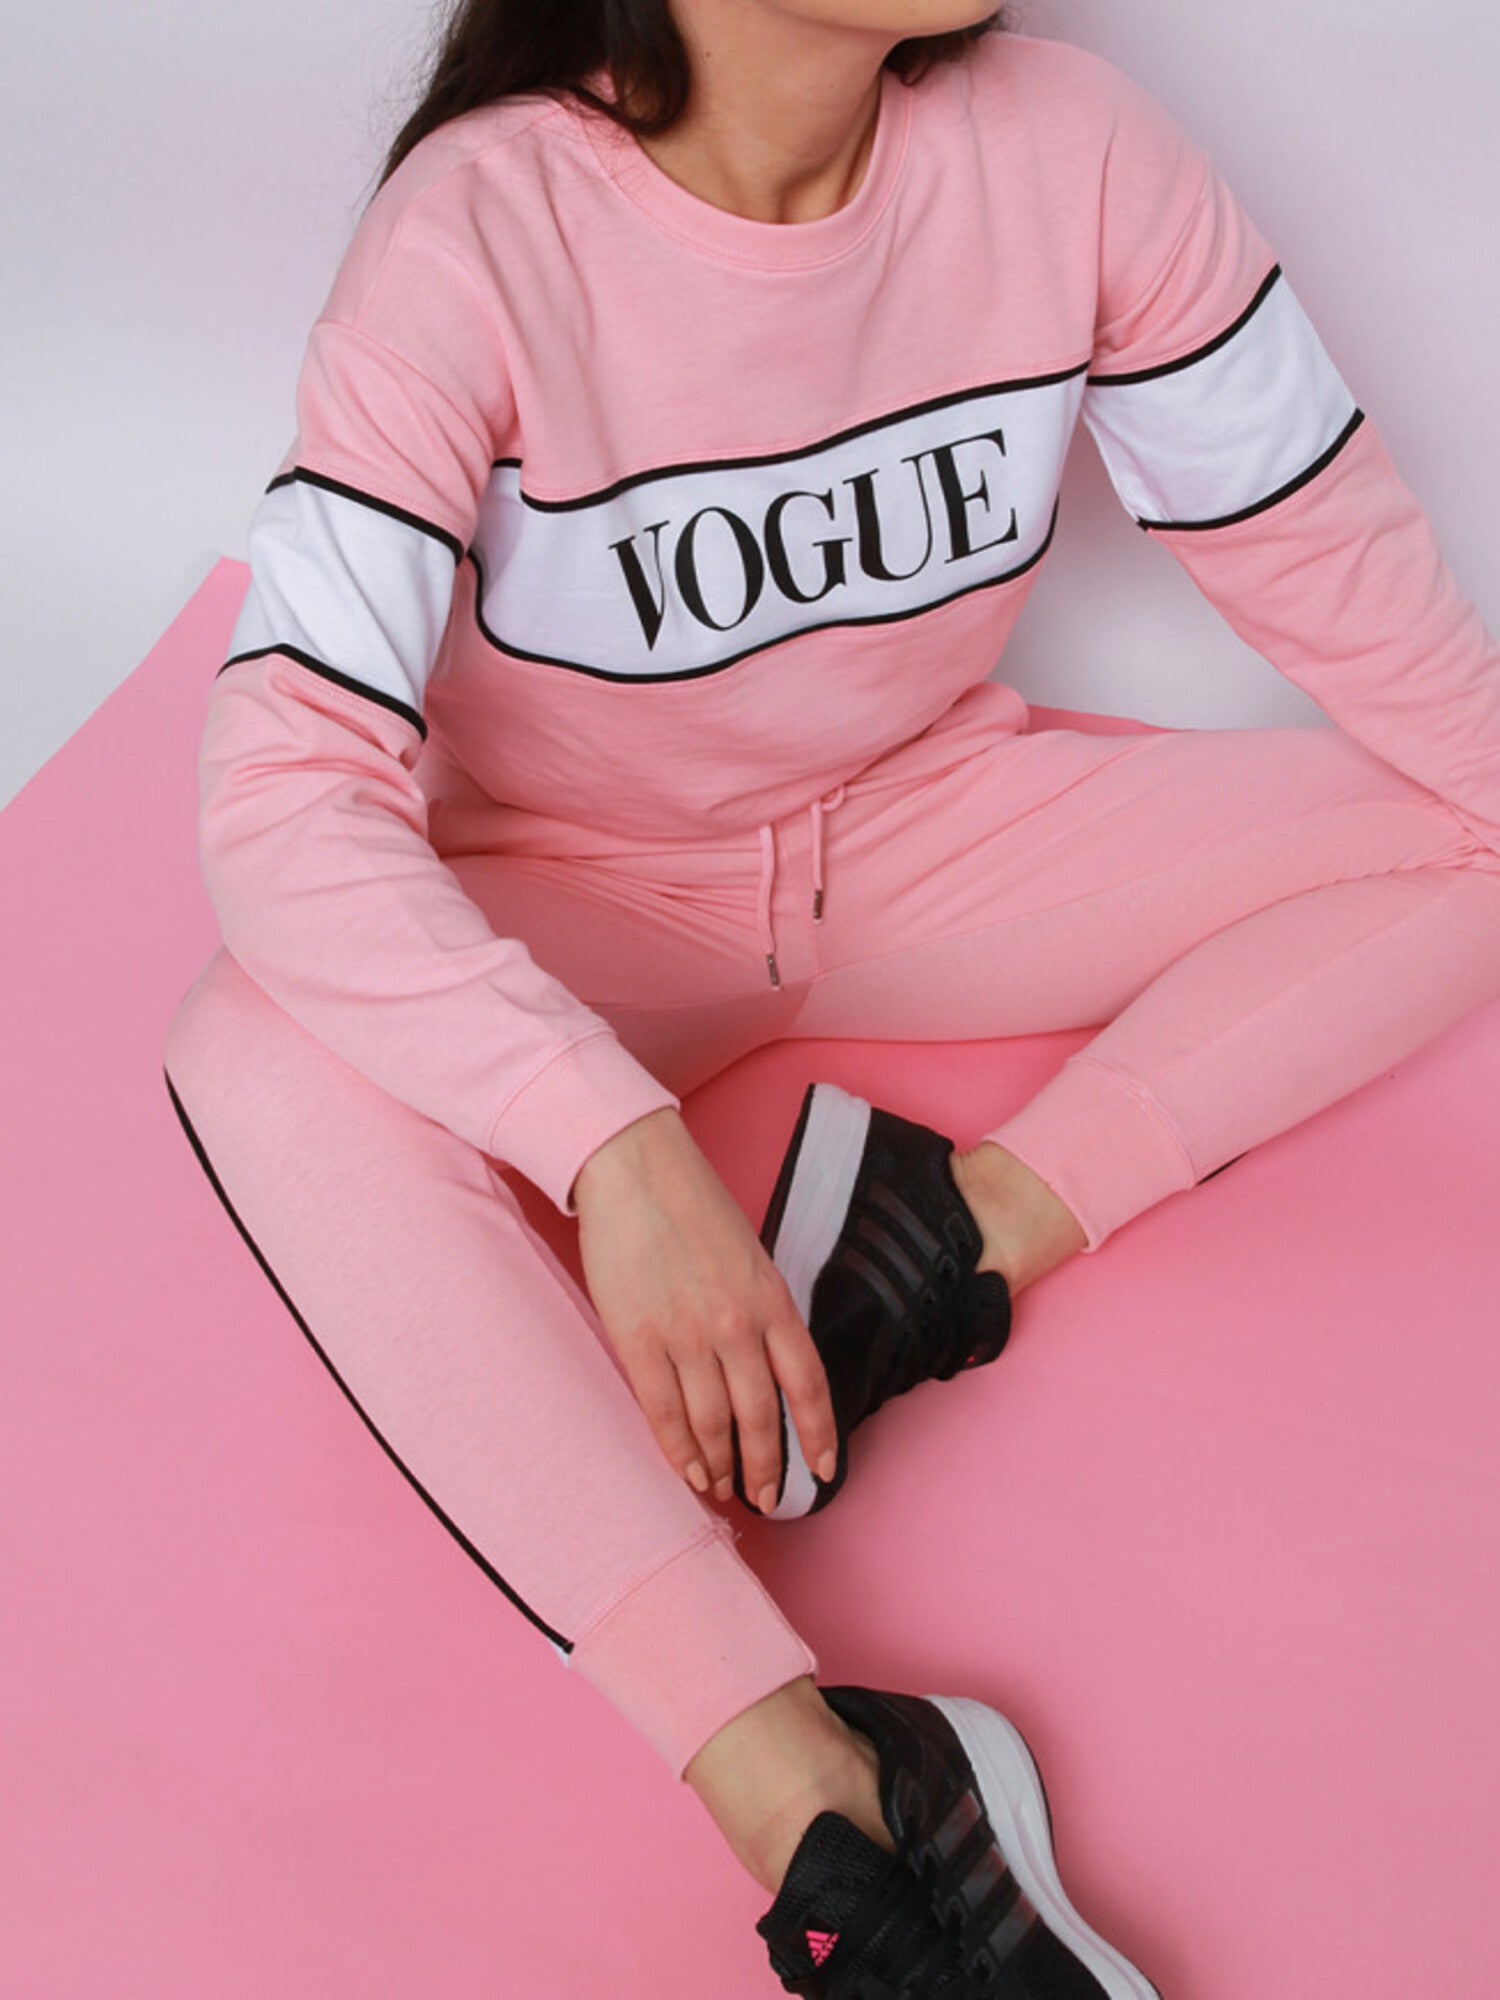 Vogue Sweatshirt in Baby pink - Lahori Athleisure (7129437765785)